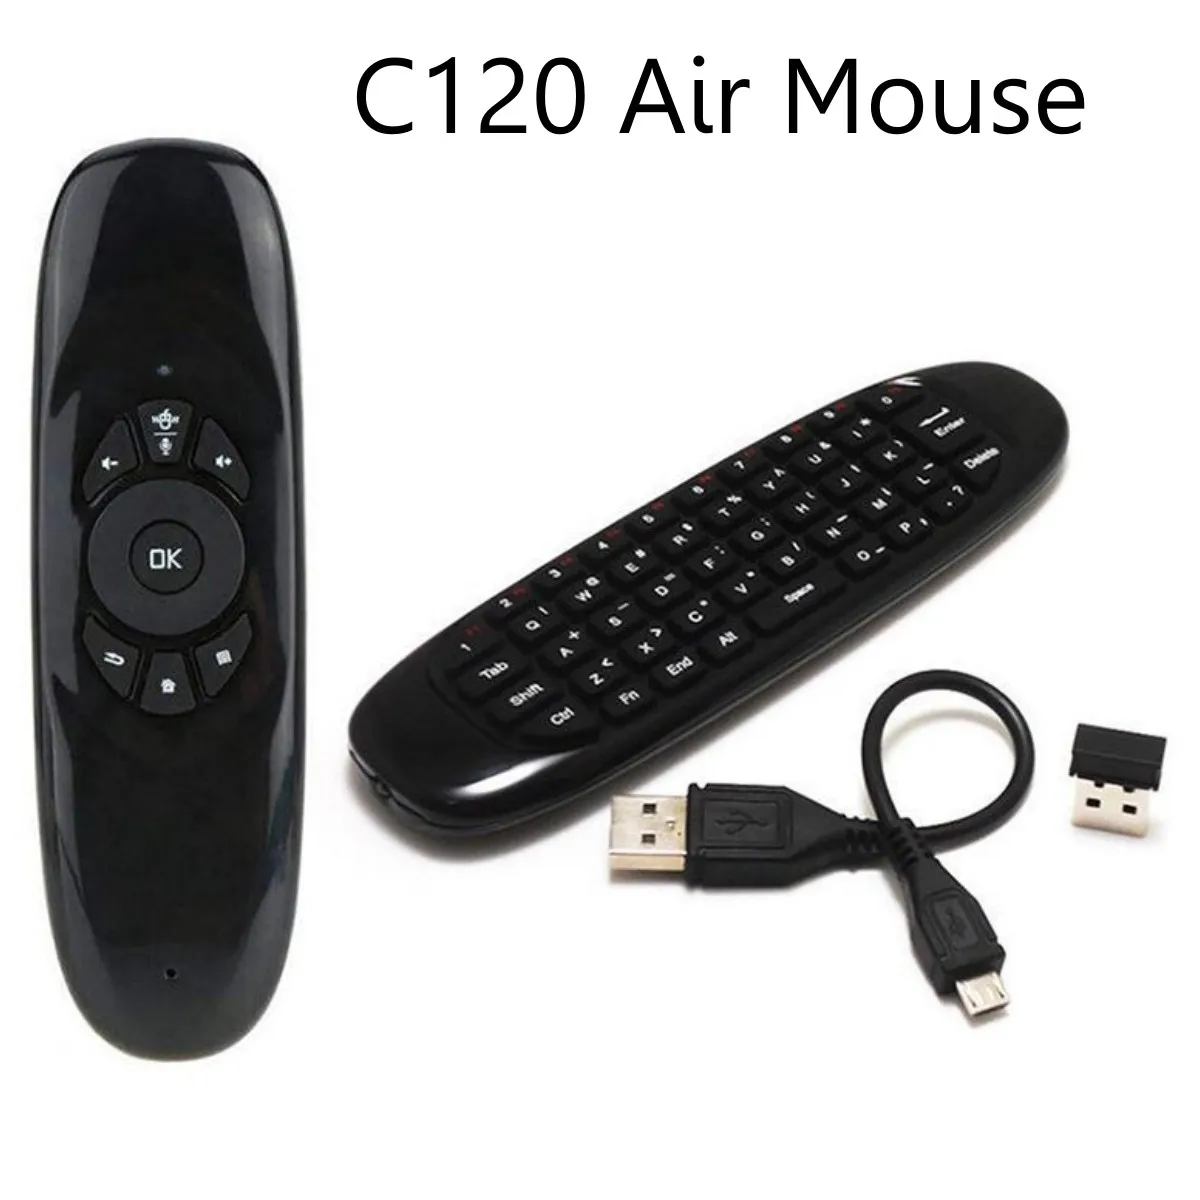 מיני עכבר אוויר C120 לעוף אוויר עכבר אלחוטי מקלדת airmouse עבור אנדרואיד תיבת הטלוויזיה/מחשב/טלוויזיה חכמה טלוויזיה מיני נייד